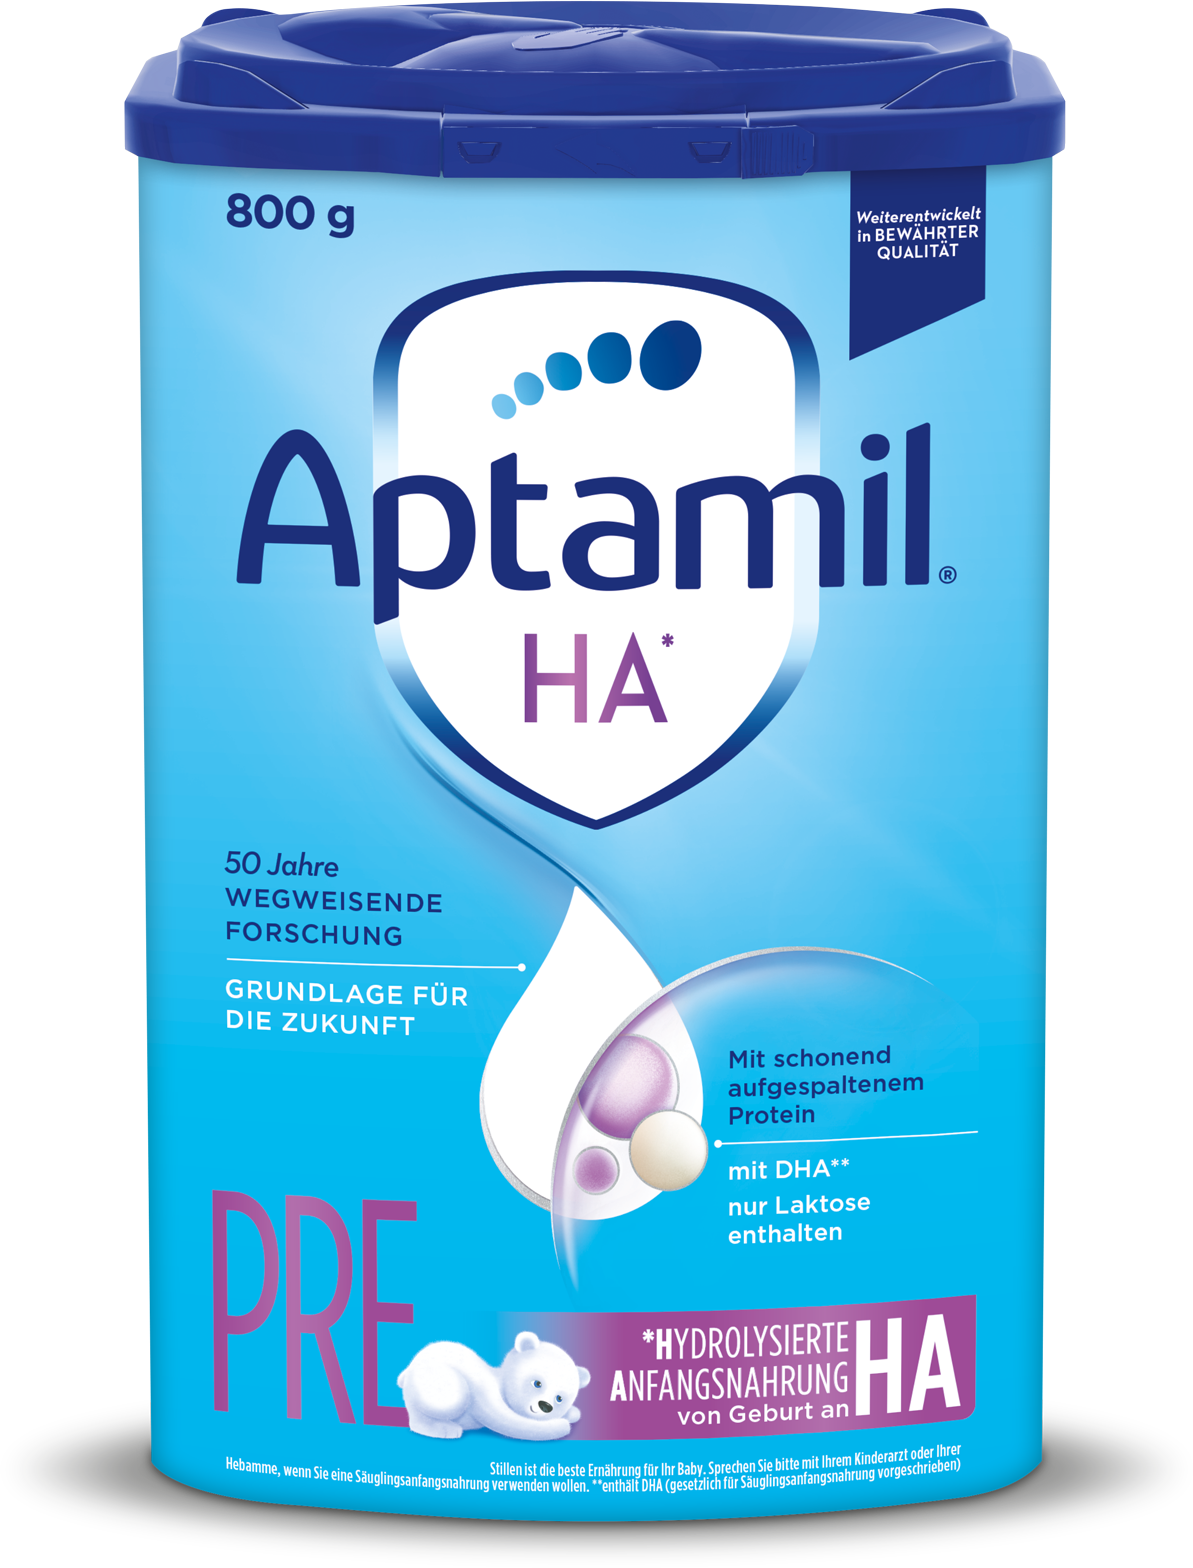 Aptamil HA Pre, formule hypoallergénique (800g/28,2 oz) 